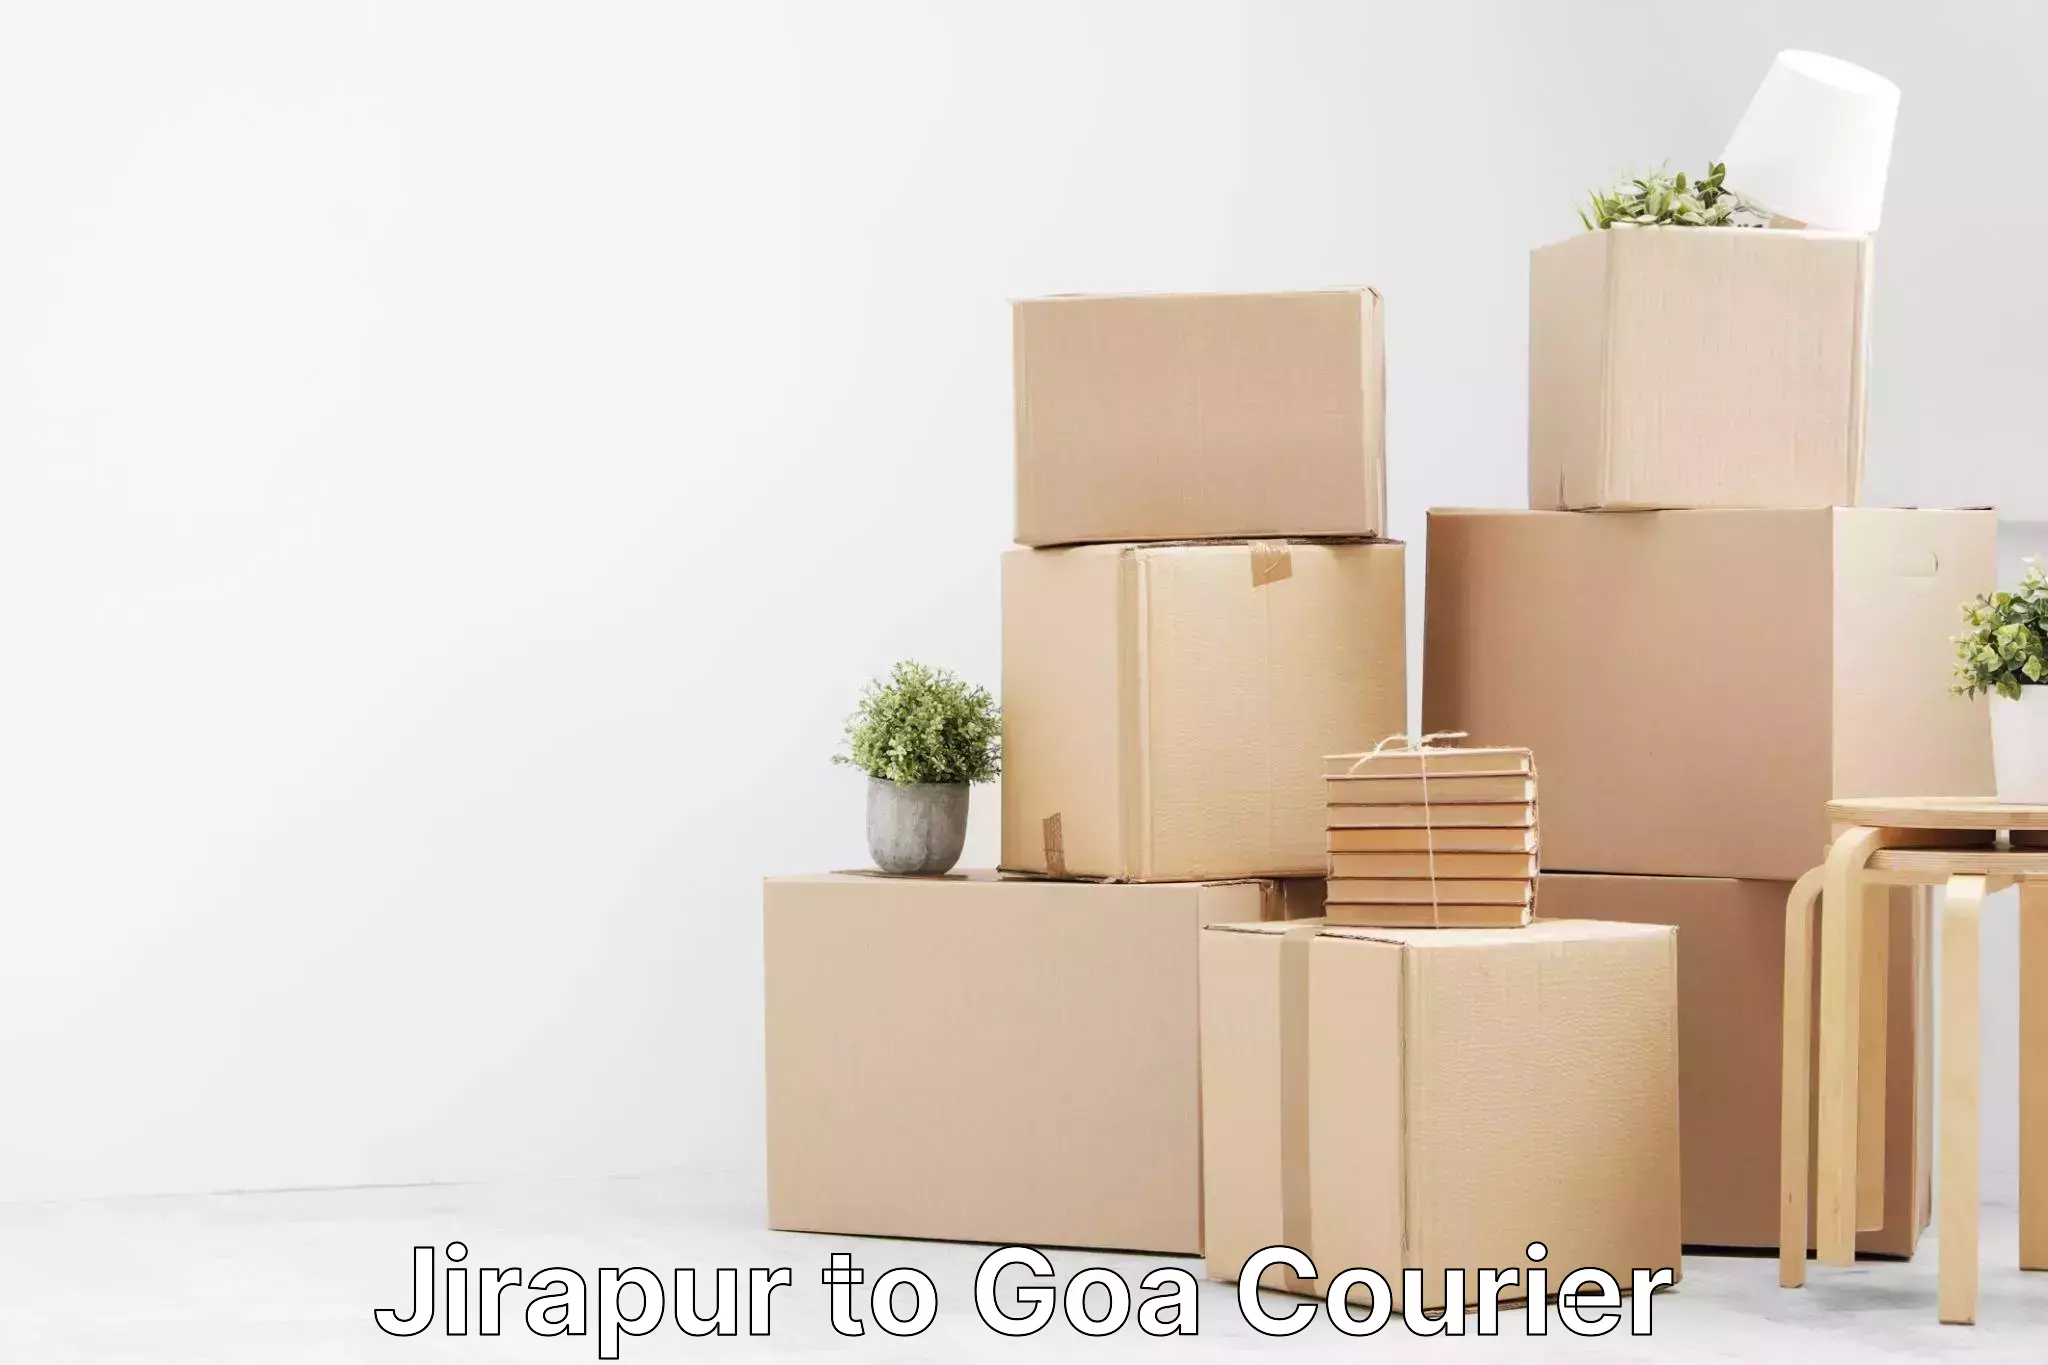 Door-to-door freight service Jirapur to Goa